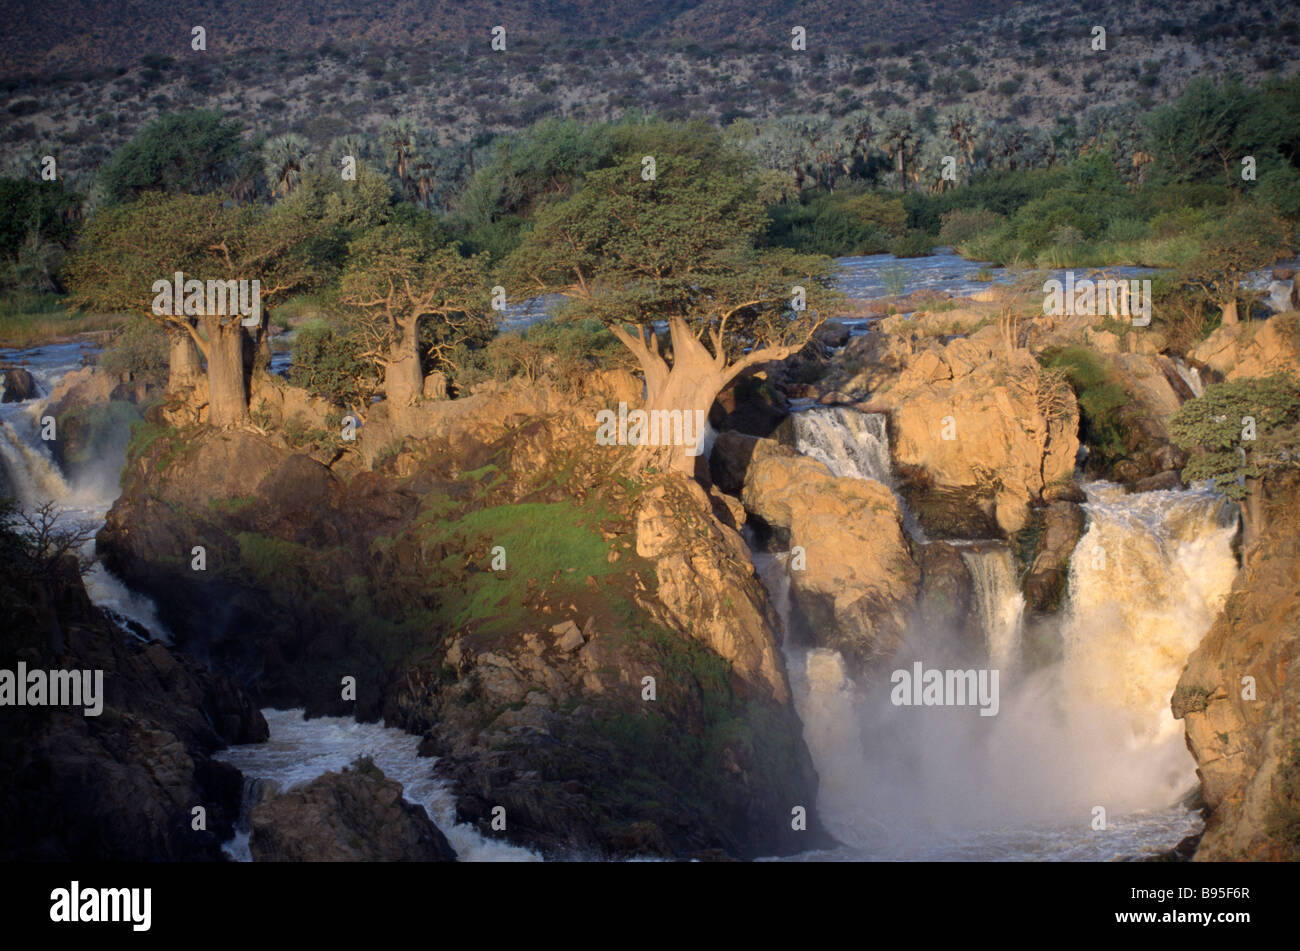 La Namibia Sud Africa fiume Kunene Epupa Falls cascate situate a nord del confine con l'Angola Foto Stock